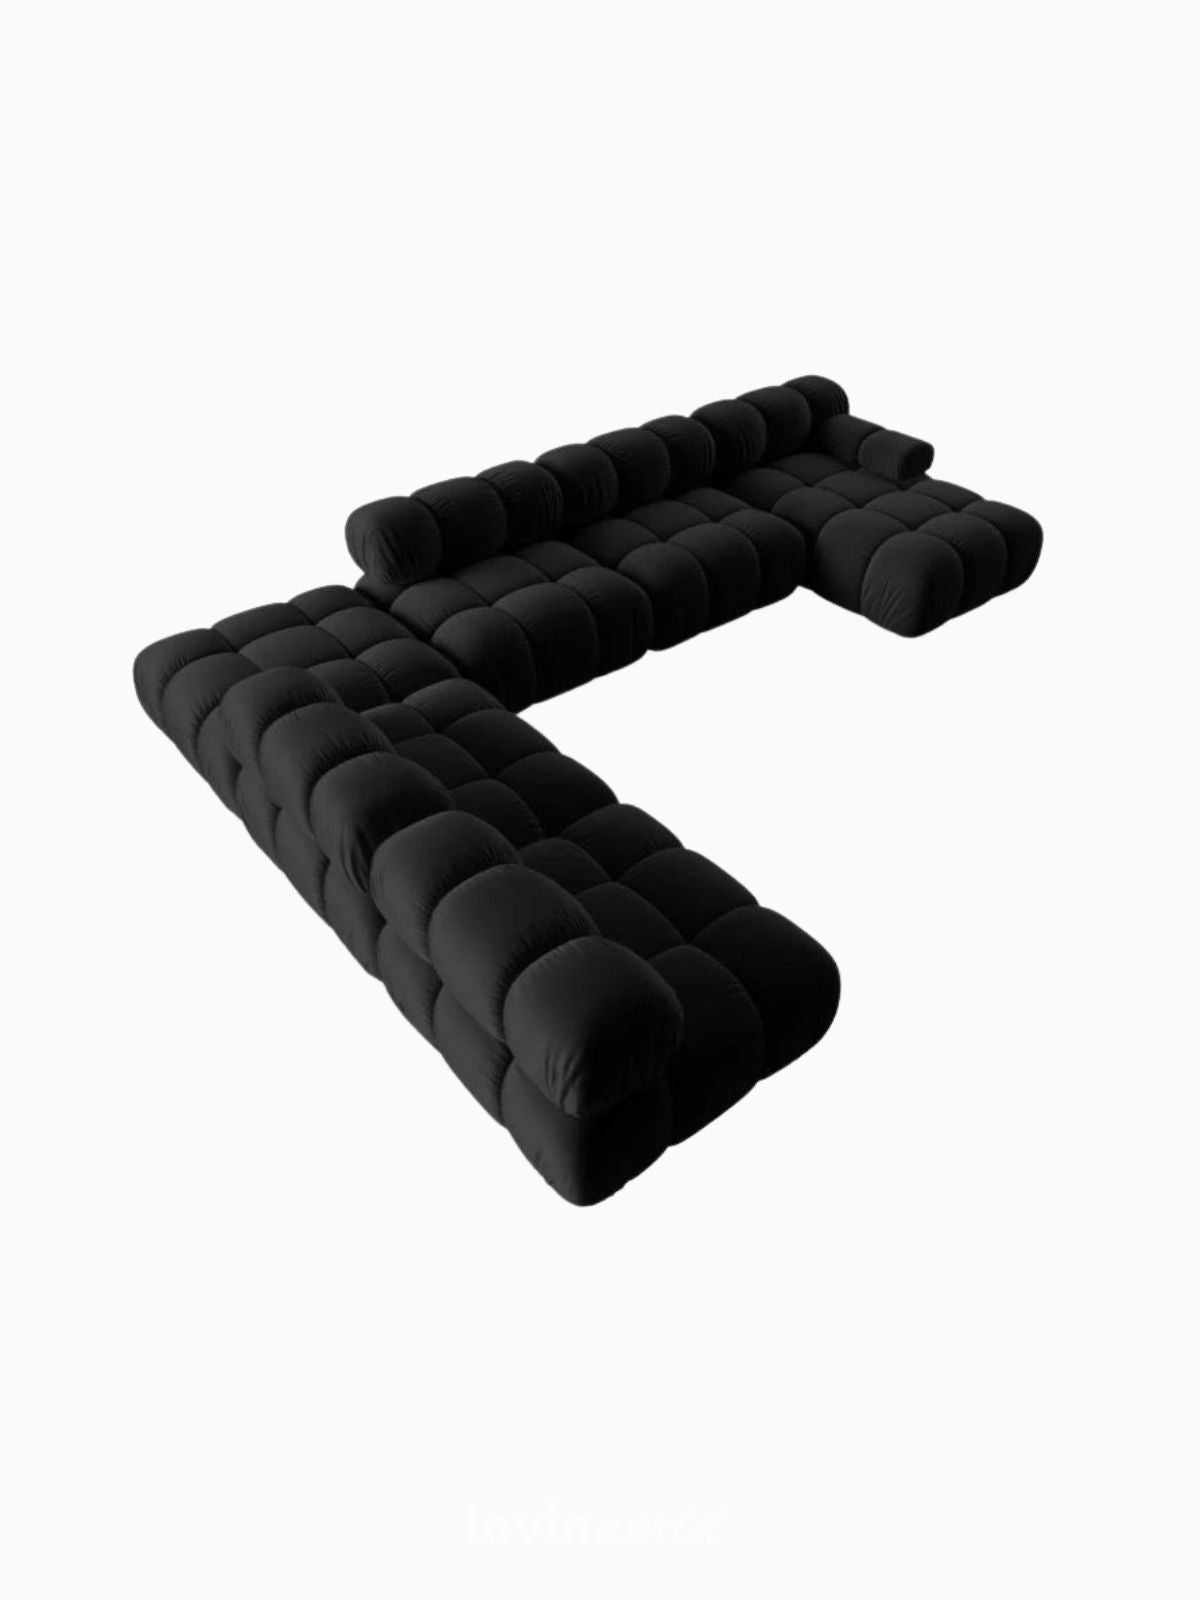 Divano modulare 7 posti Bellis in velluto, colore nero-3